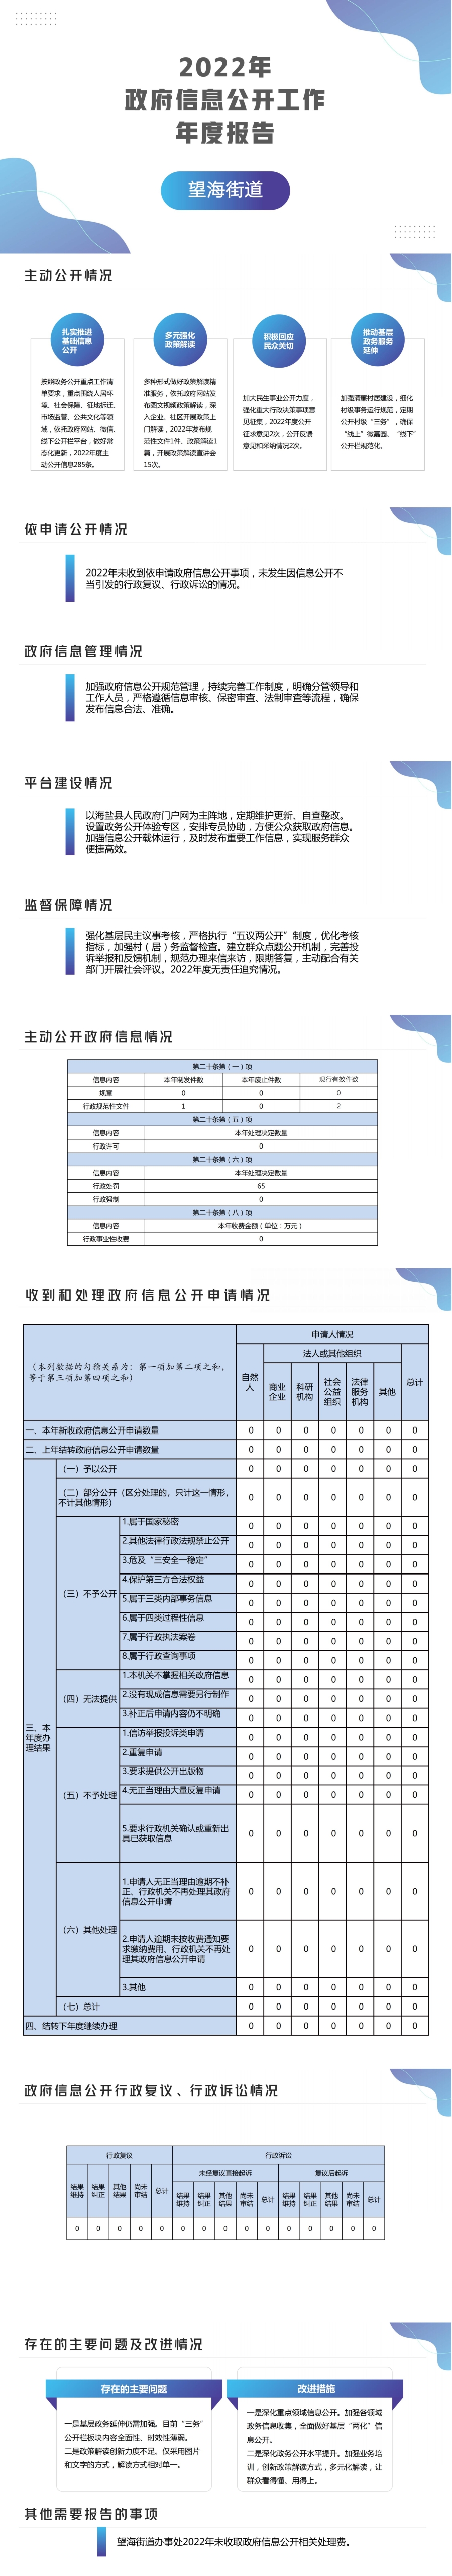 海盐县望海街道2022年度政府信息公开工作年度报告.jpg